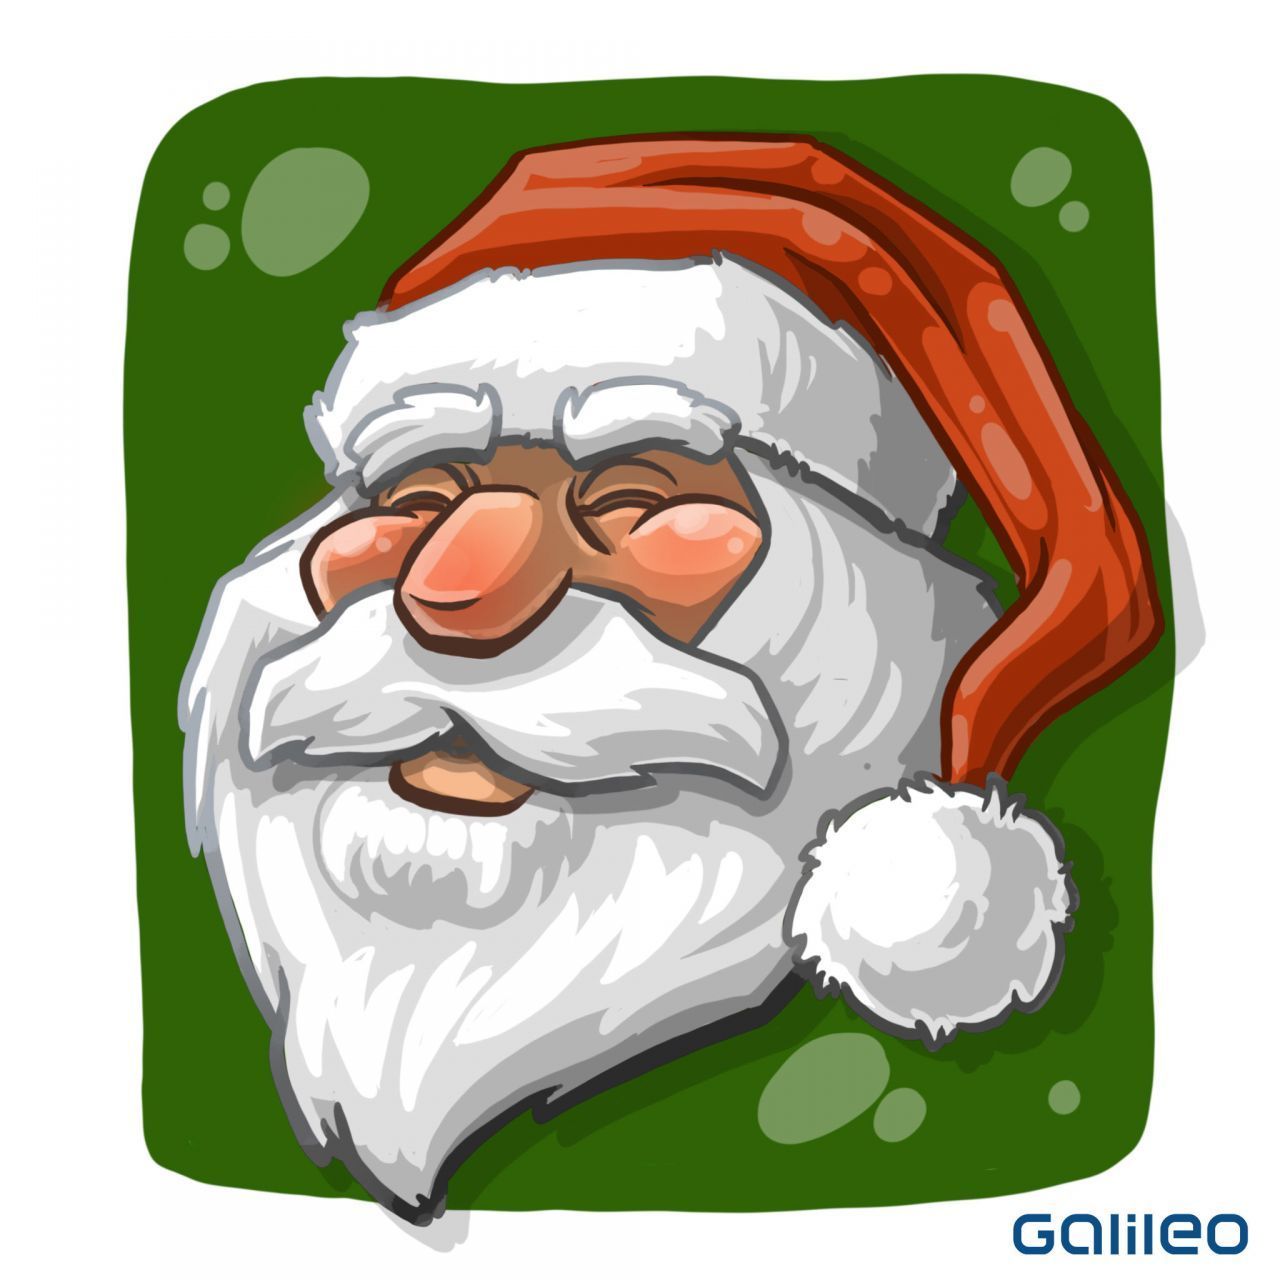 Weißer Rauschebart, rotes Gewand, liebes Gesicht - den Weihnachtsmann, wie wir ihn heute kennen, gibt es erst seit Anfang der 30er-Jahre. Sein Aussehen entsprang einer Coca-Cola-Werbung. Hinter "Santa Claus" verbirgt sich der Heilige Nikolaus in einer glanzvolleren Aufmache. Er inspirierte den Konzern zu seiner Weihnachts-Werbung. 